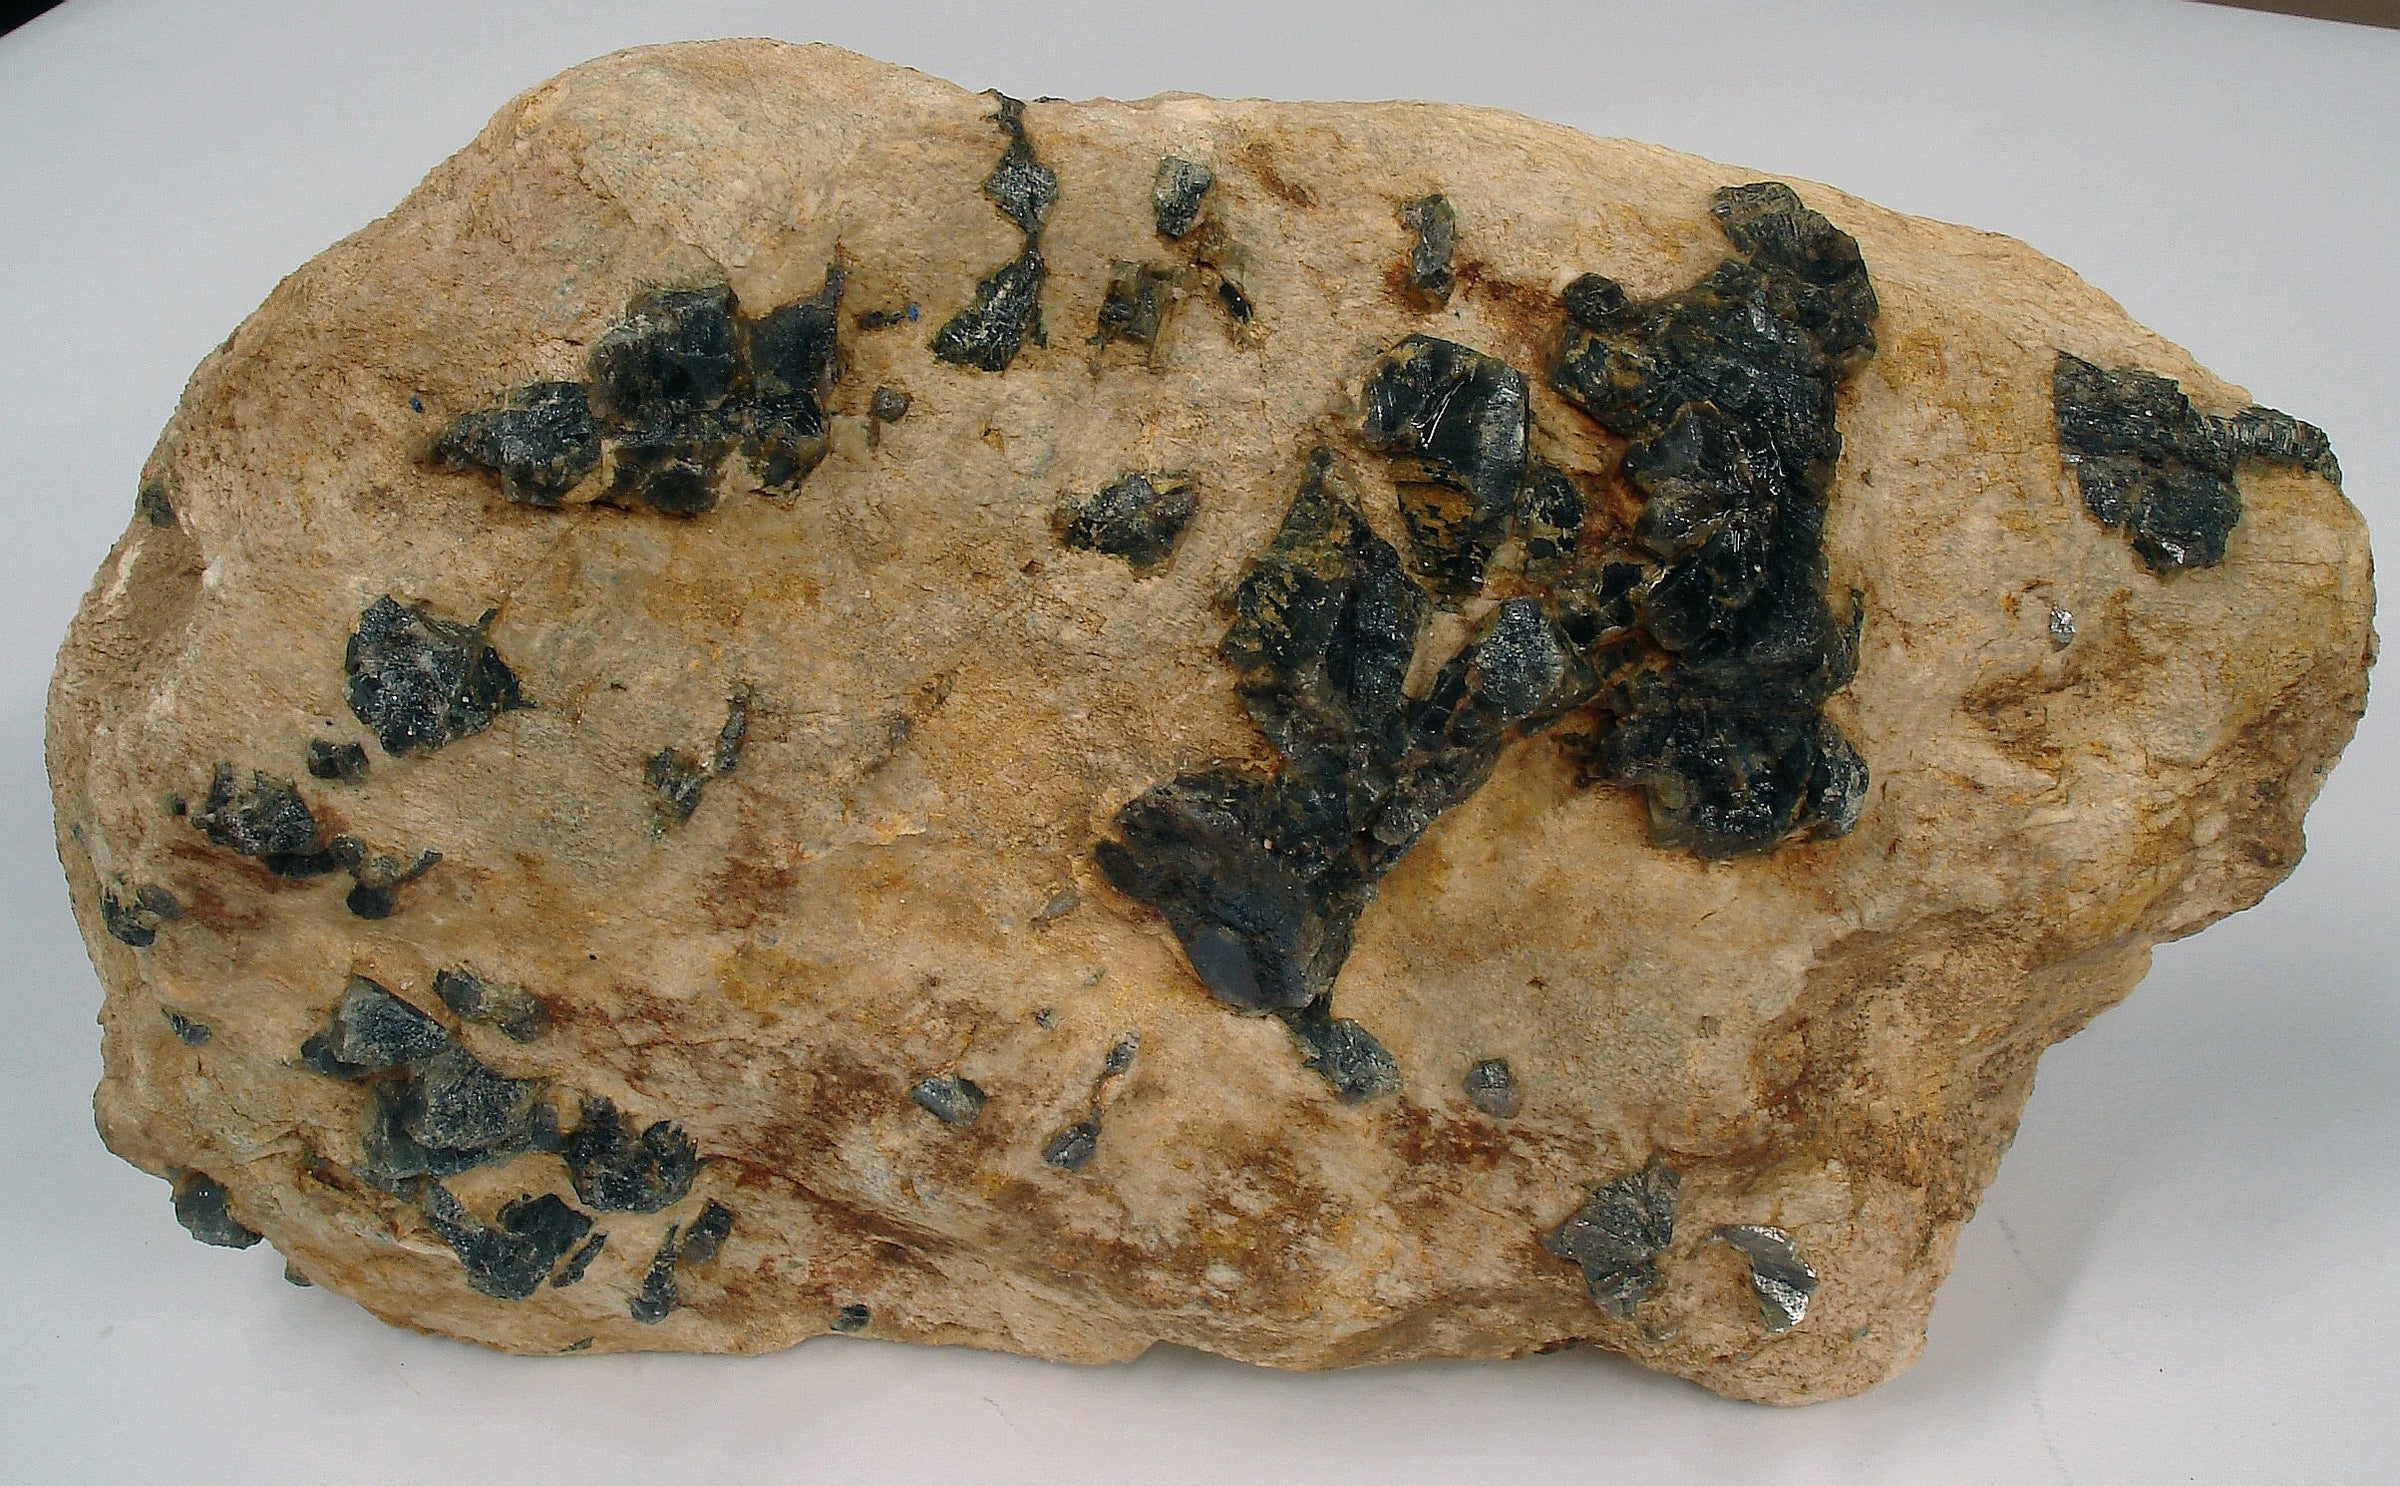 Pegmatite (偉晶岩)